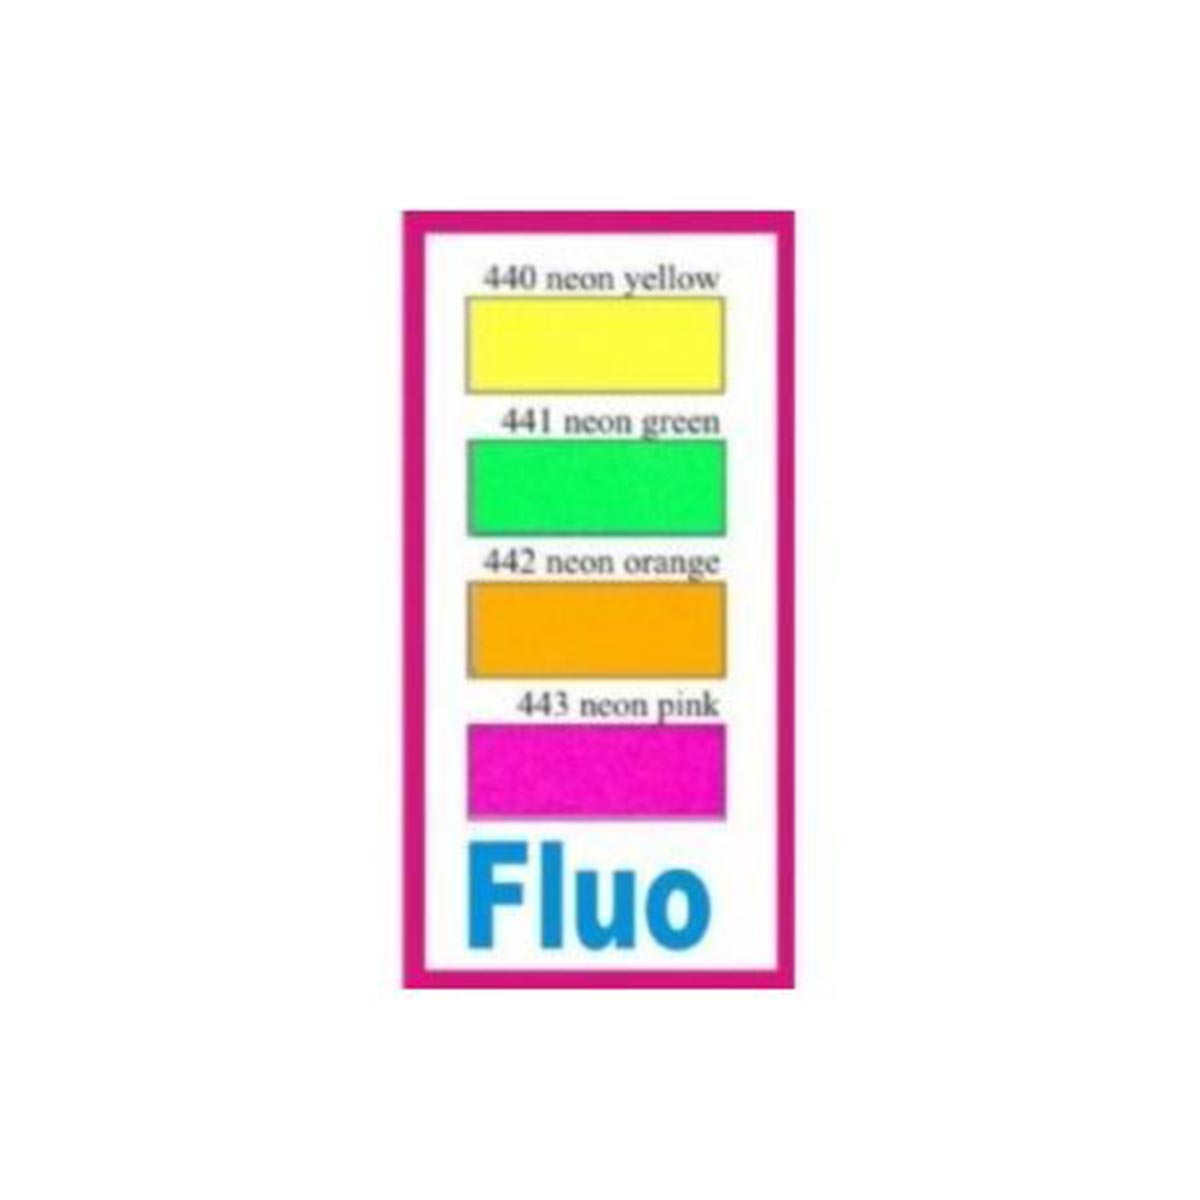 Termoadesivo Flex Premium - Fluo